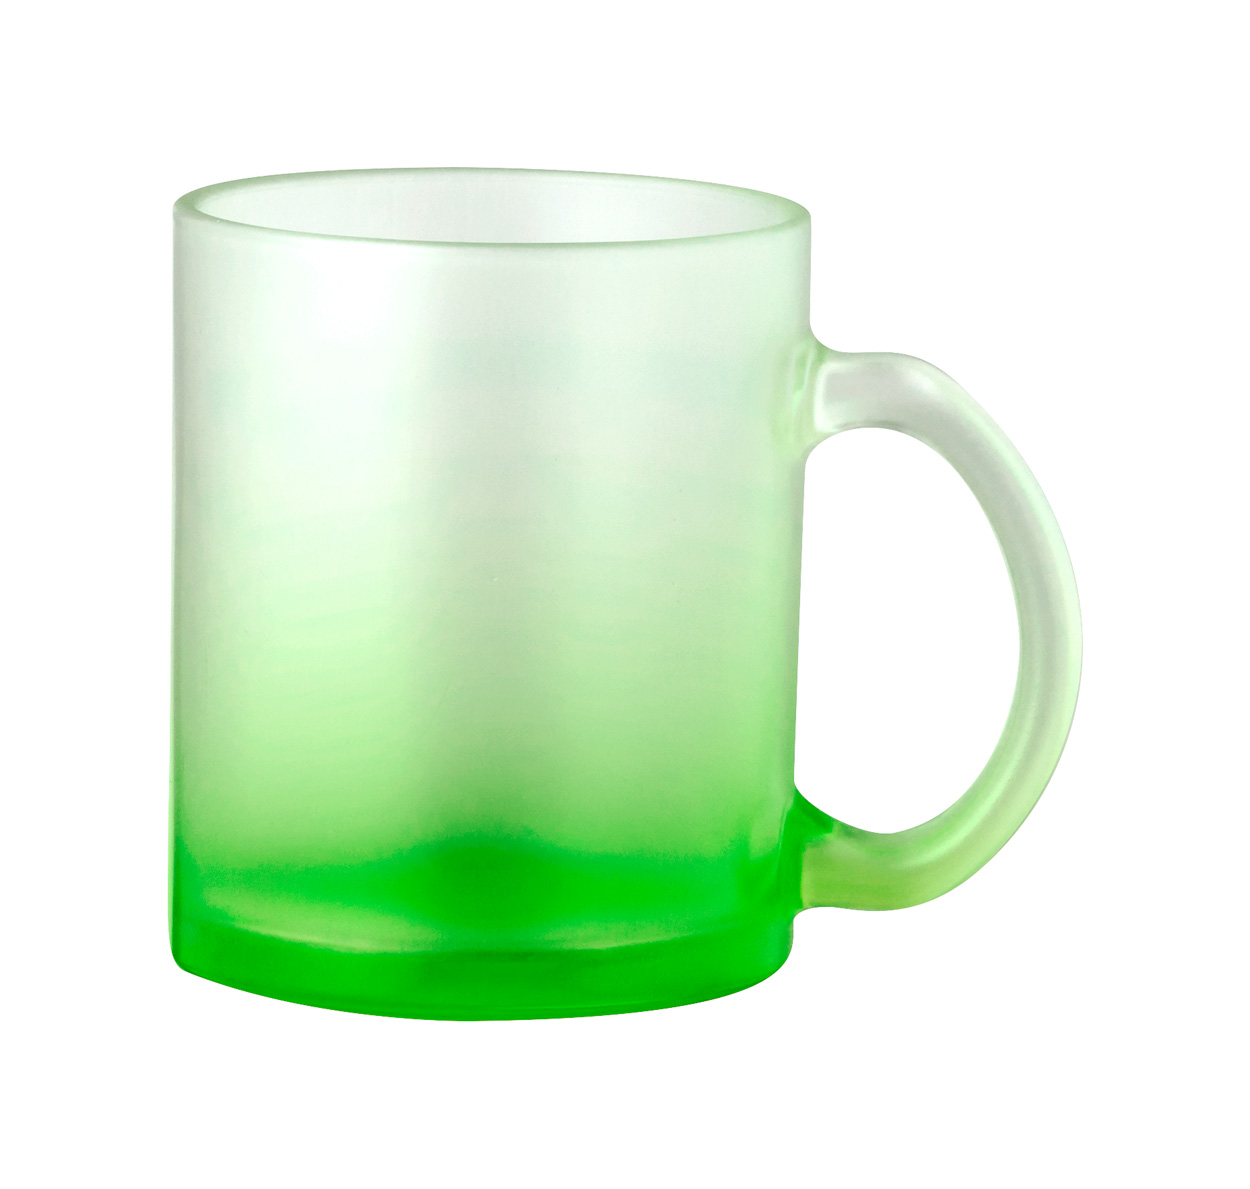 Osaka sublimation mug - green